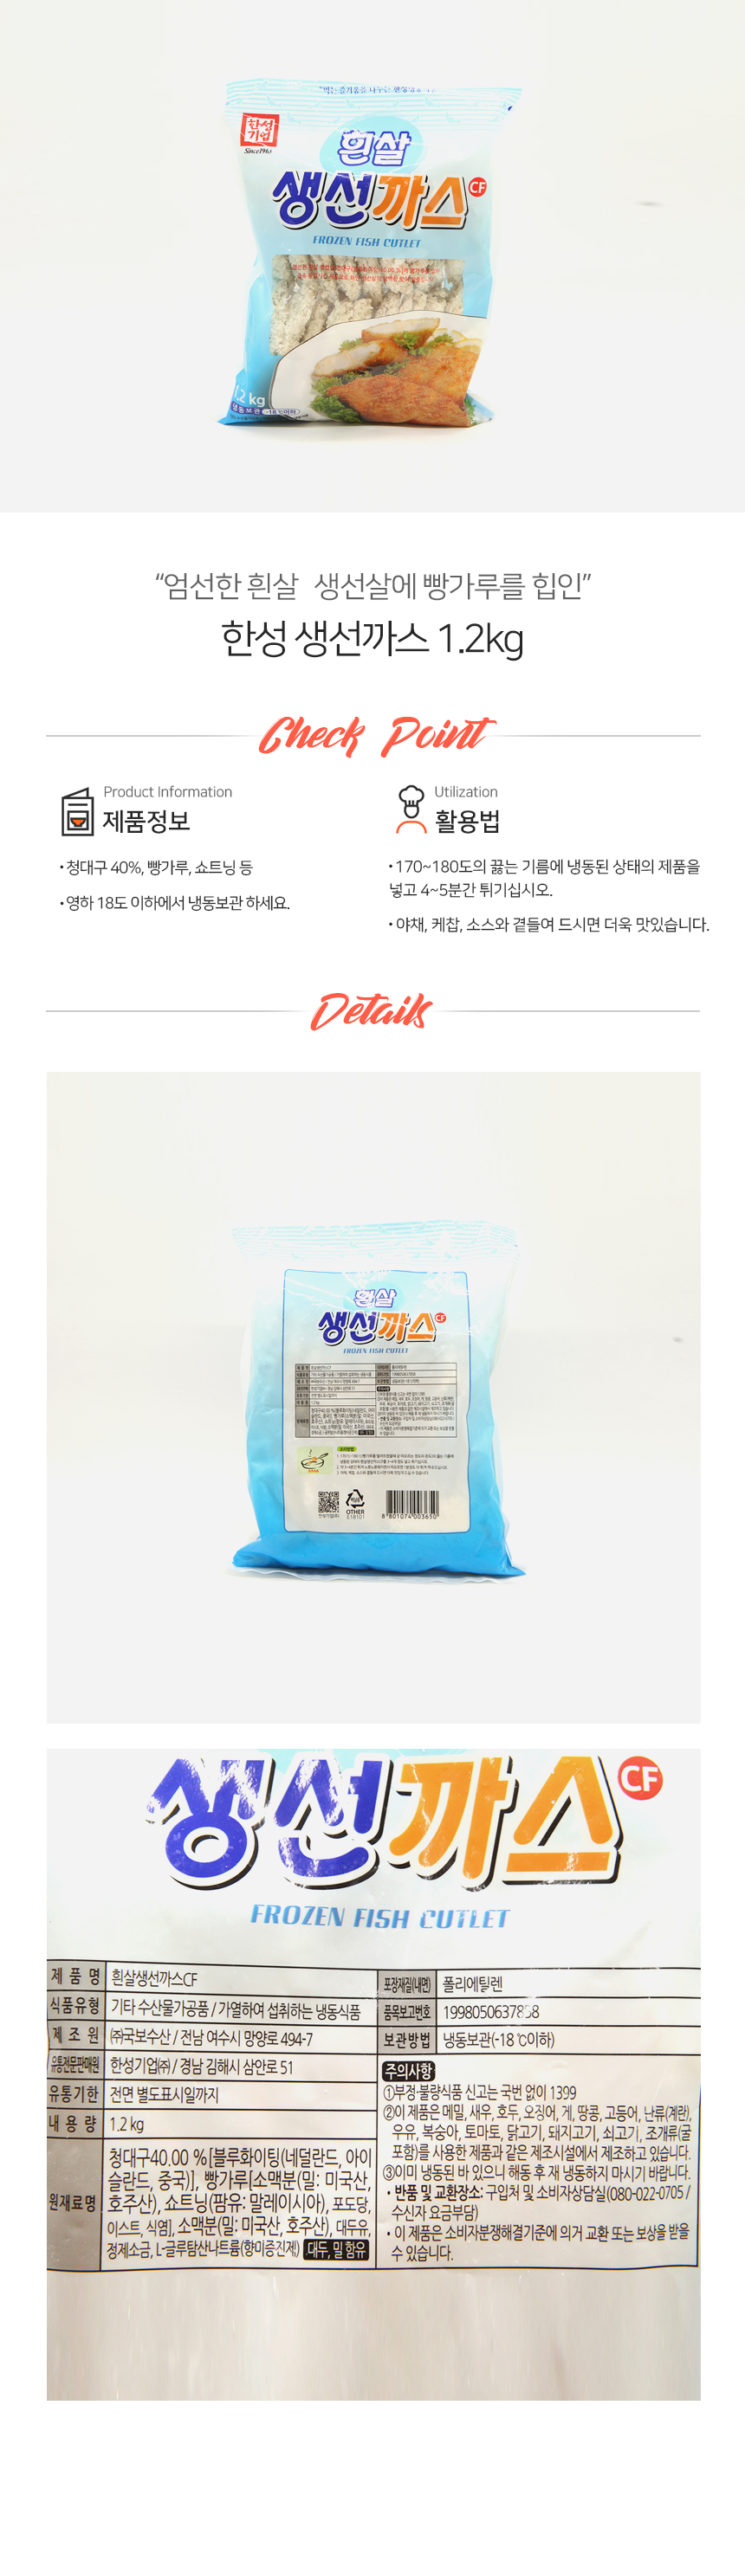 韓國食品-[한성] 흰살생선까스 1.2kg